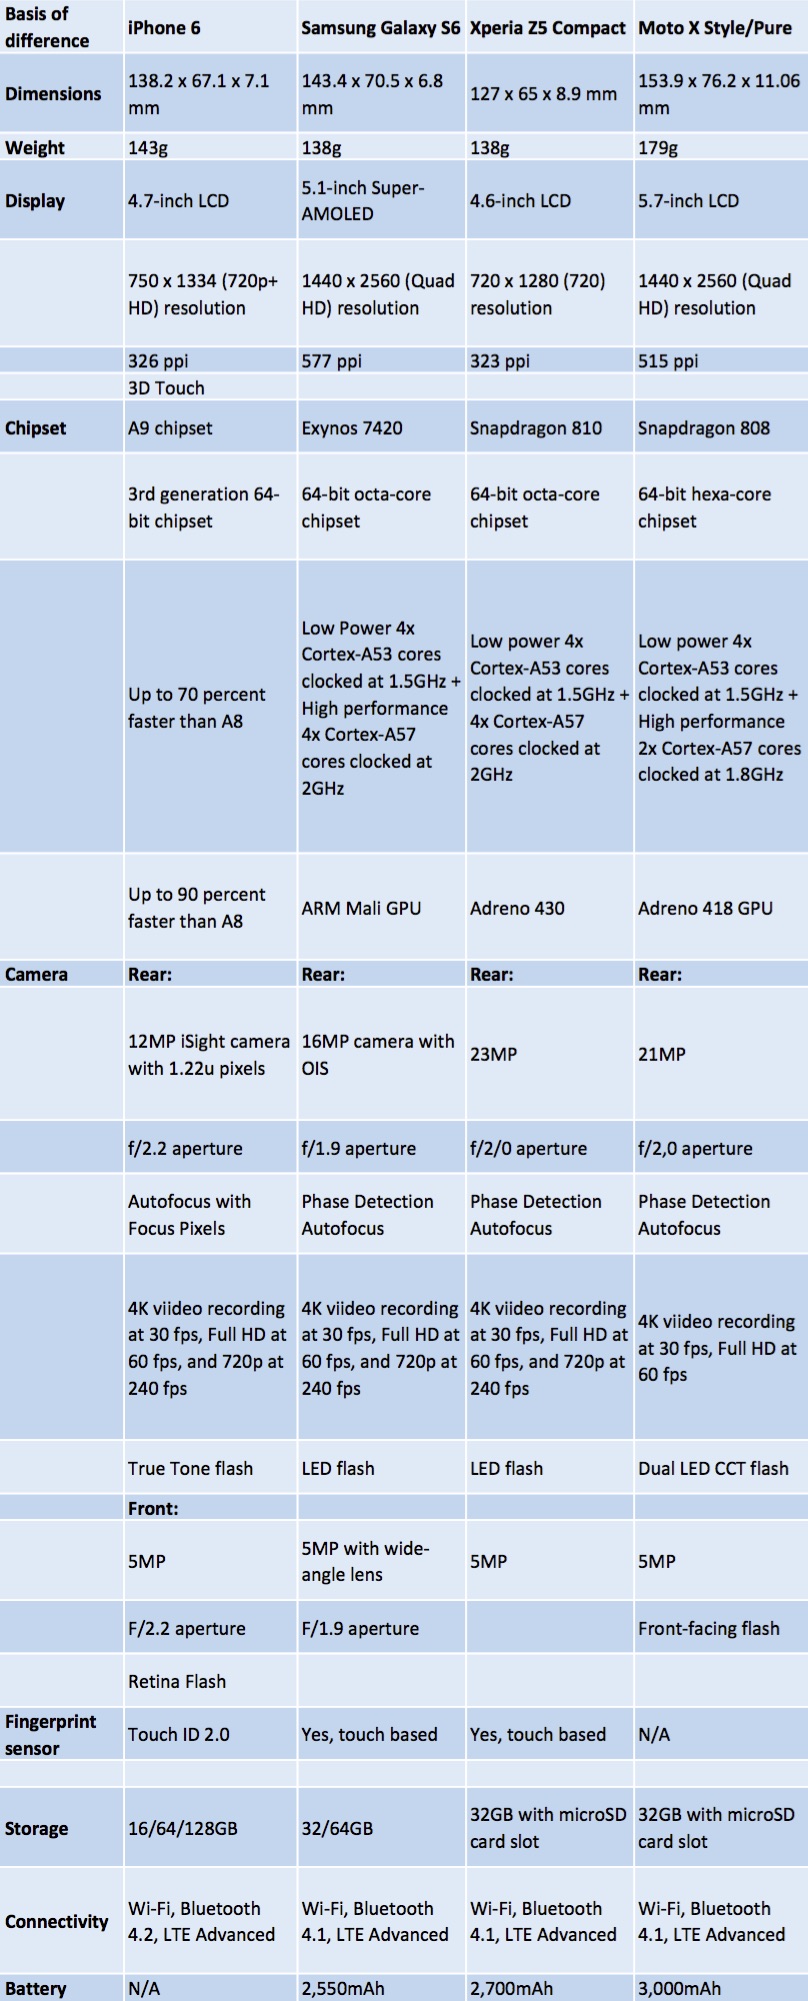 iPhone 6s vs. Samsung Galaxy S6 vs. Sony Xperia Z5 Compact vs. Moto X Pure